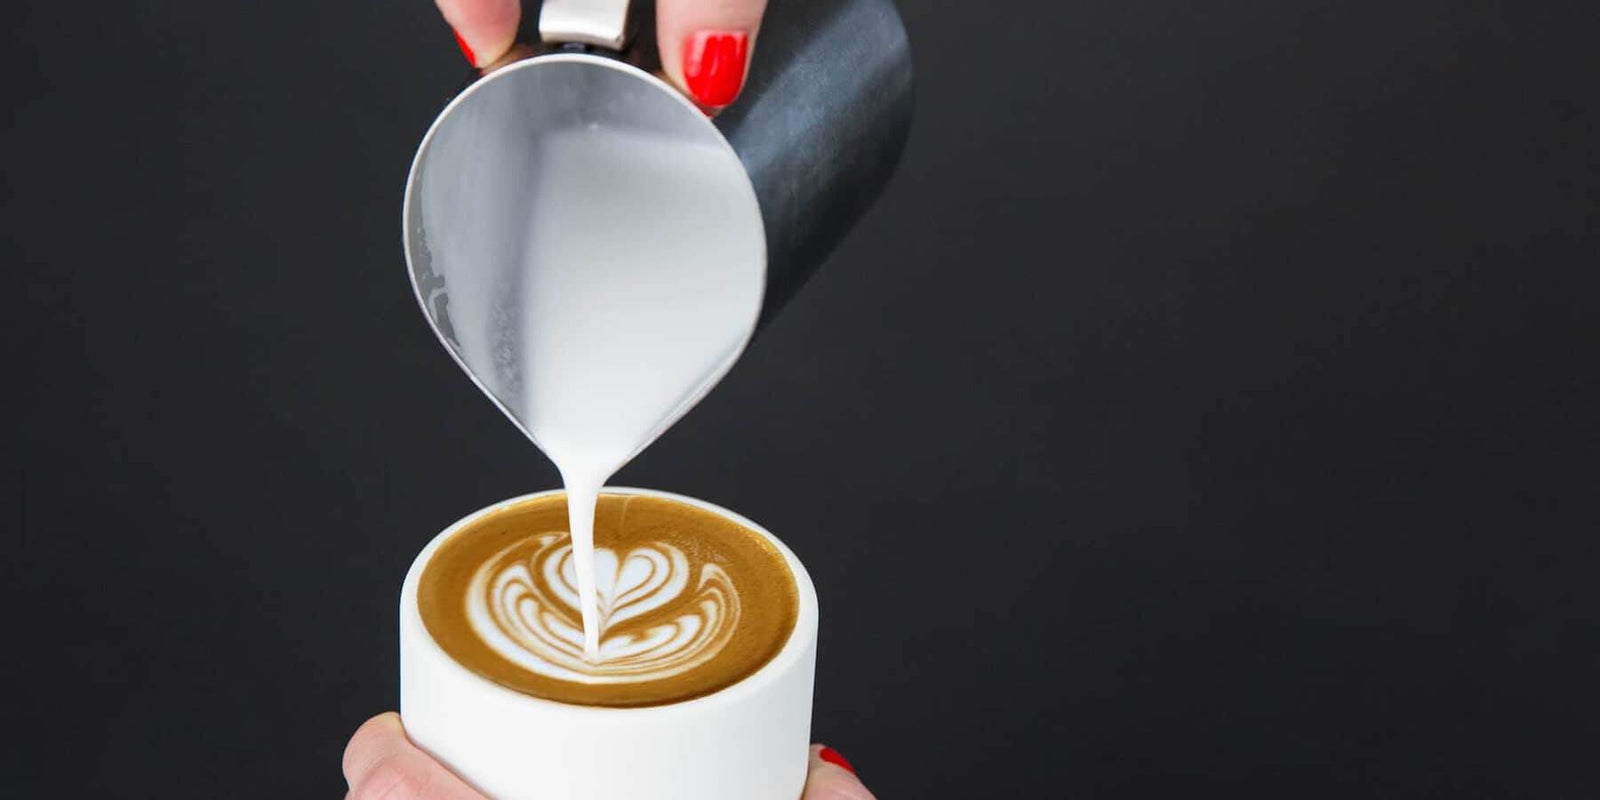 BELLMAN Stovetop Espresso & Cappuccino Maker – Someware